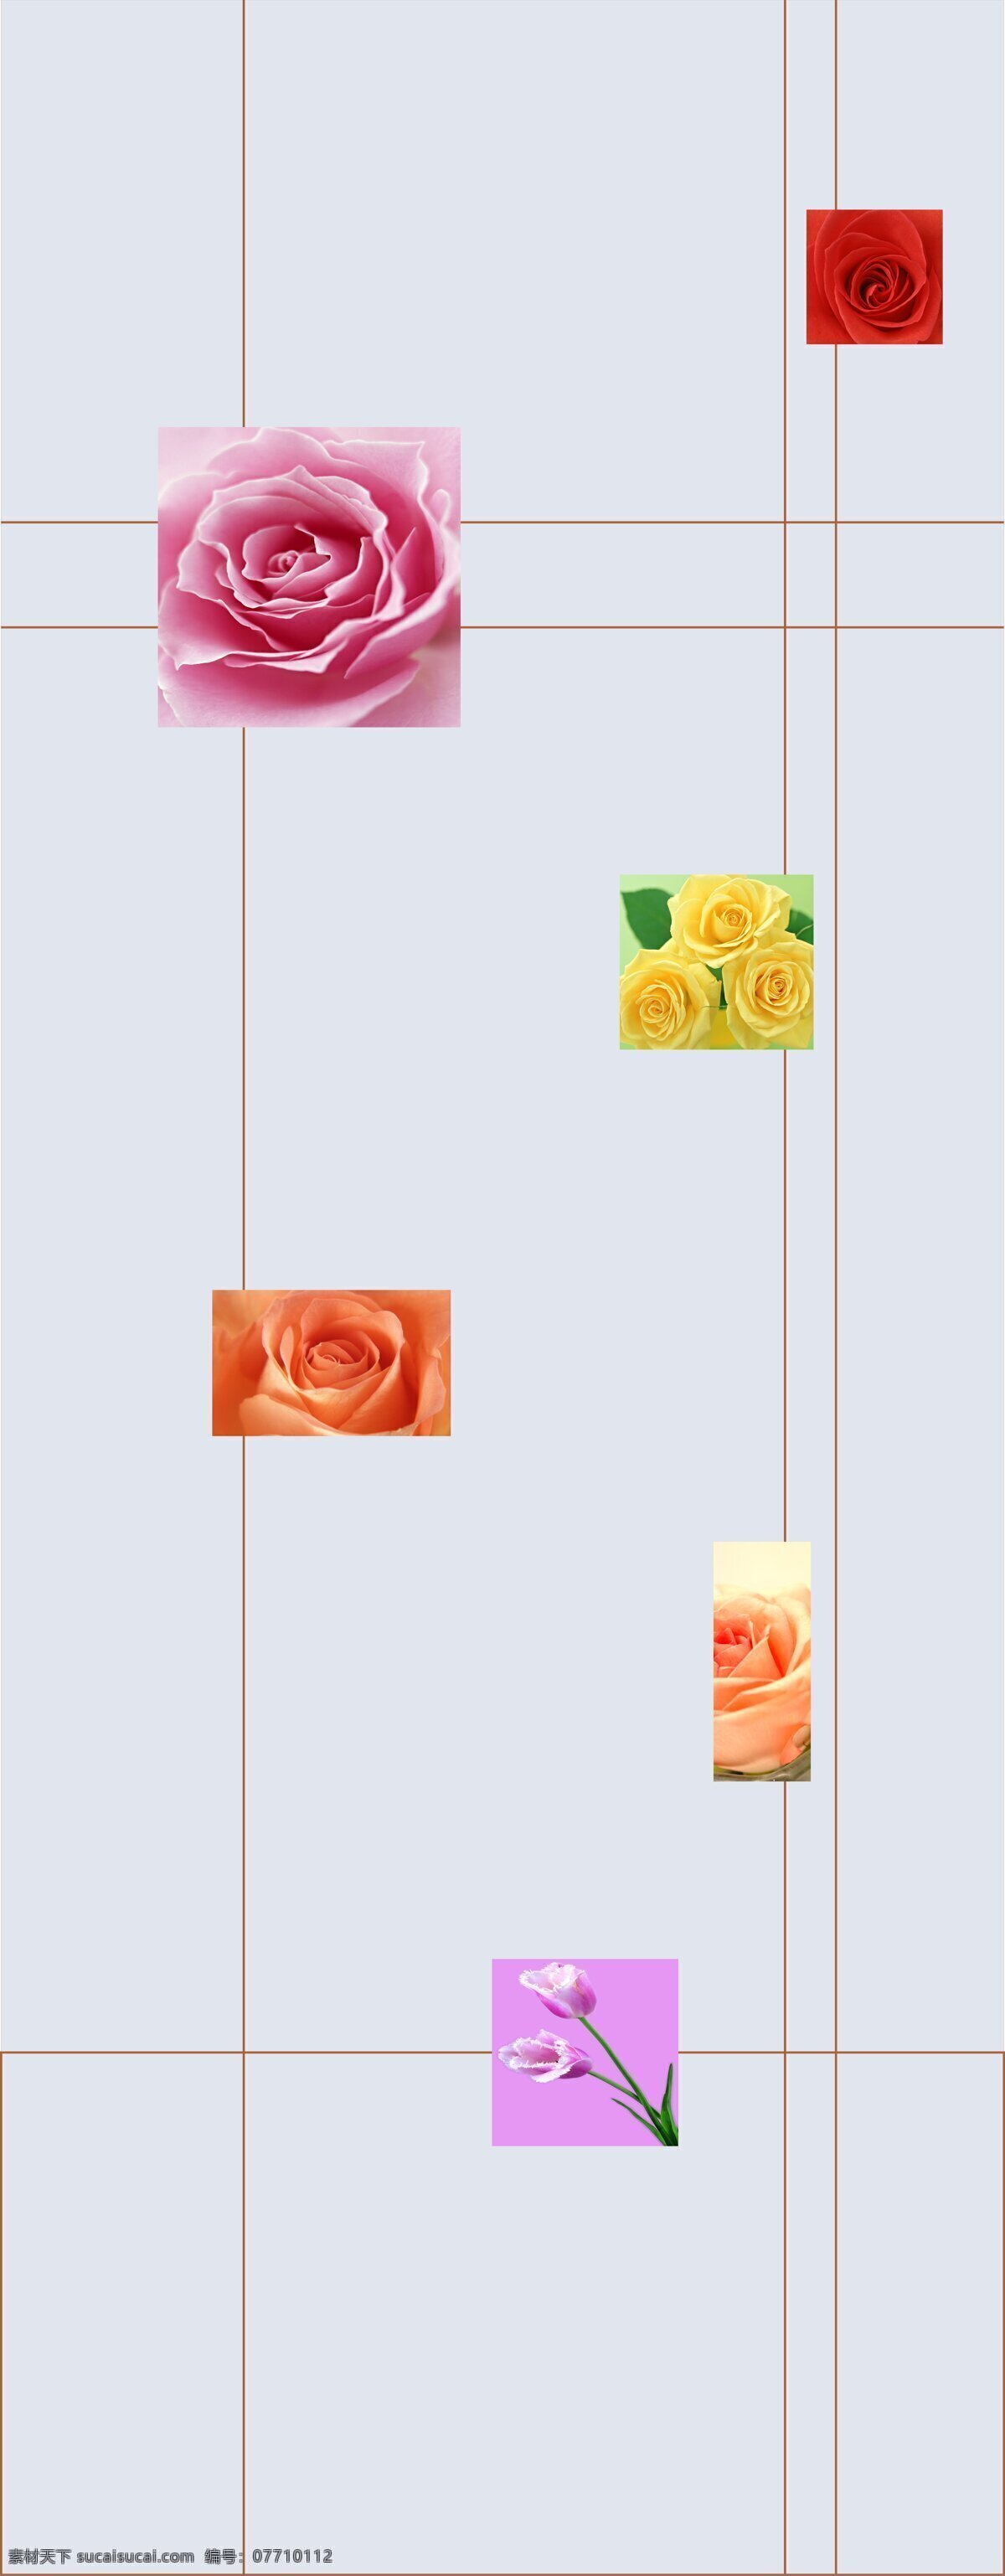 移门 底纹 背景 花朵 郁金香 玫瑰 移门设计图 移门图案 底纹边框